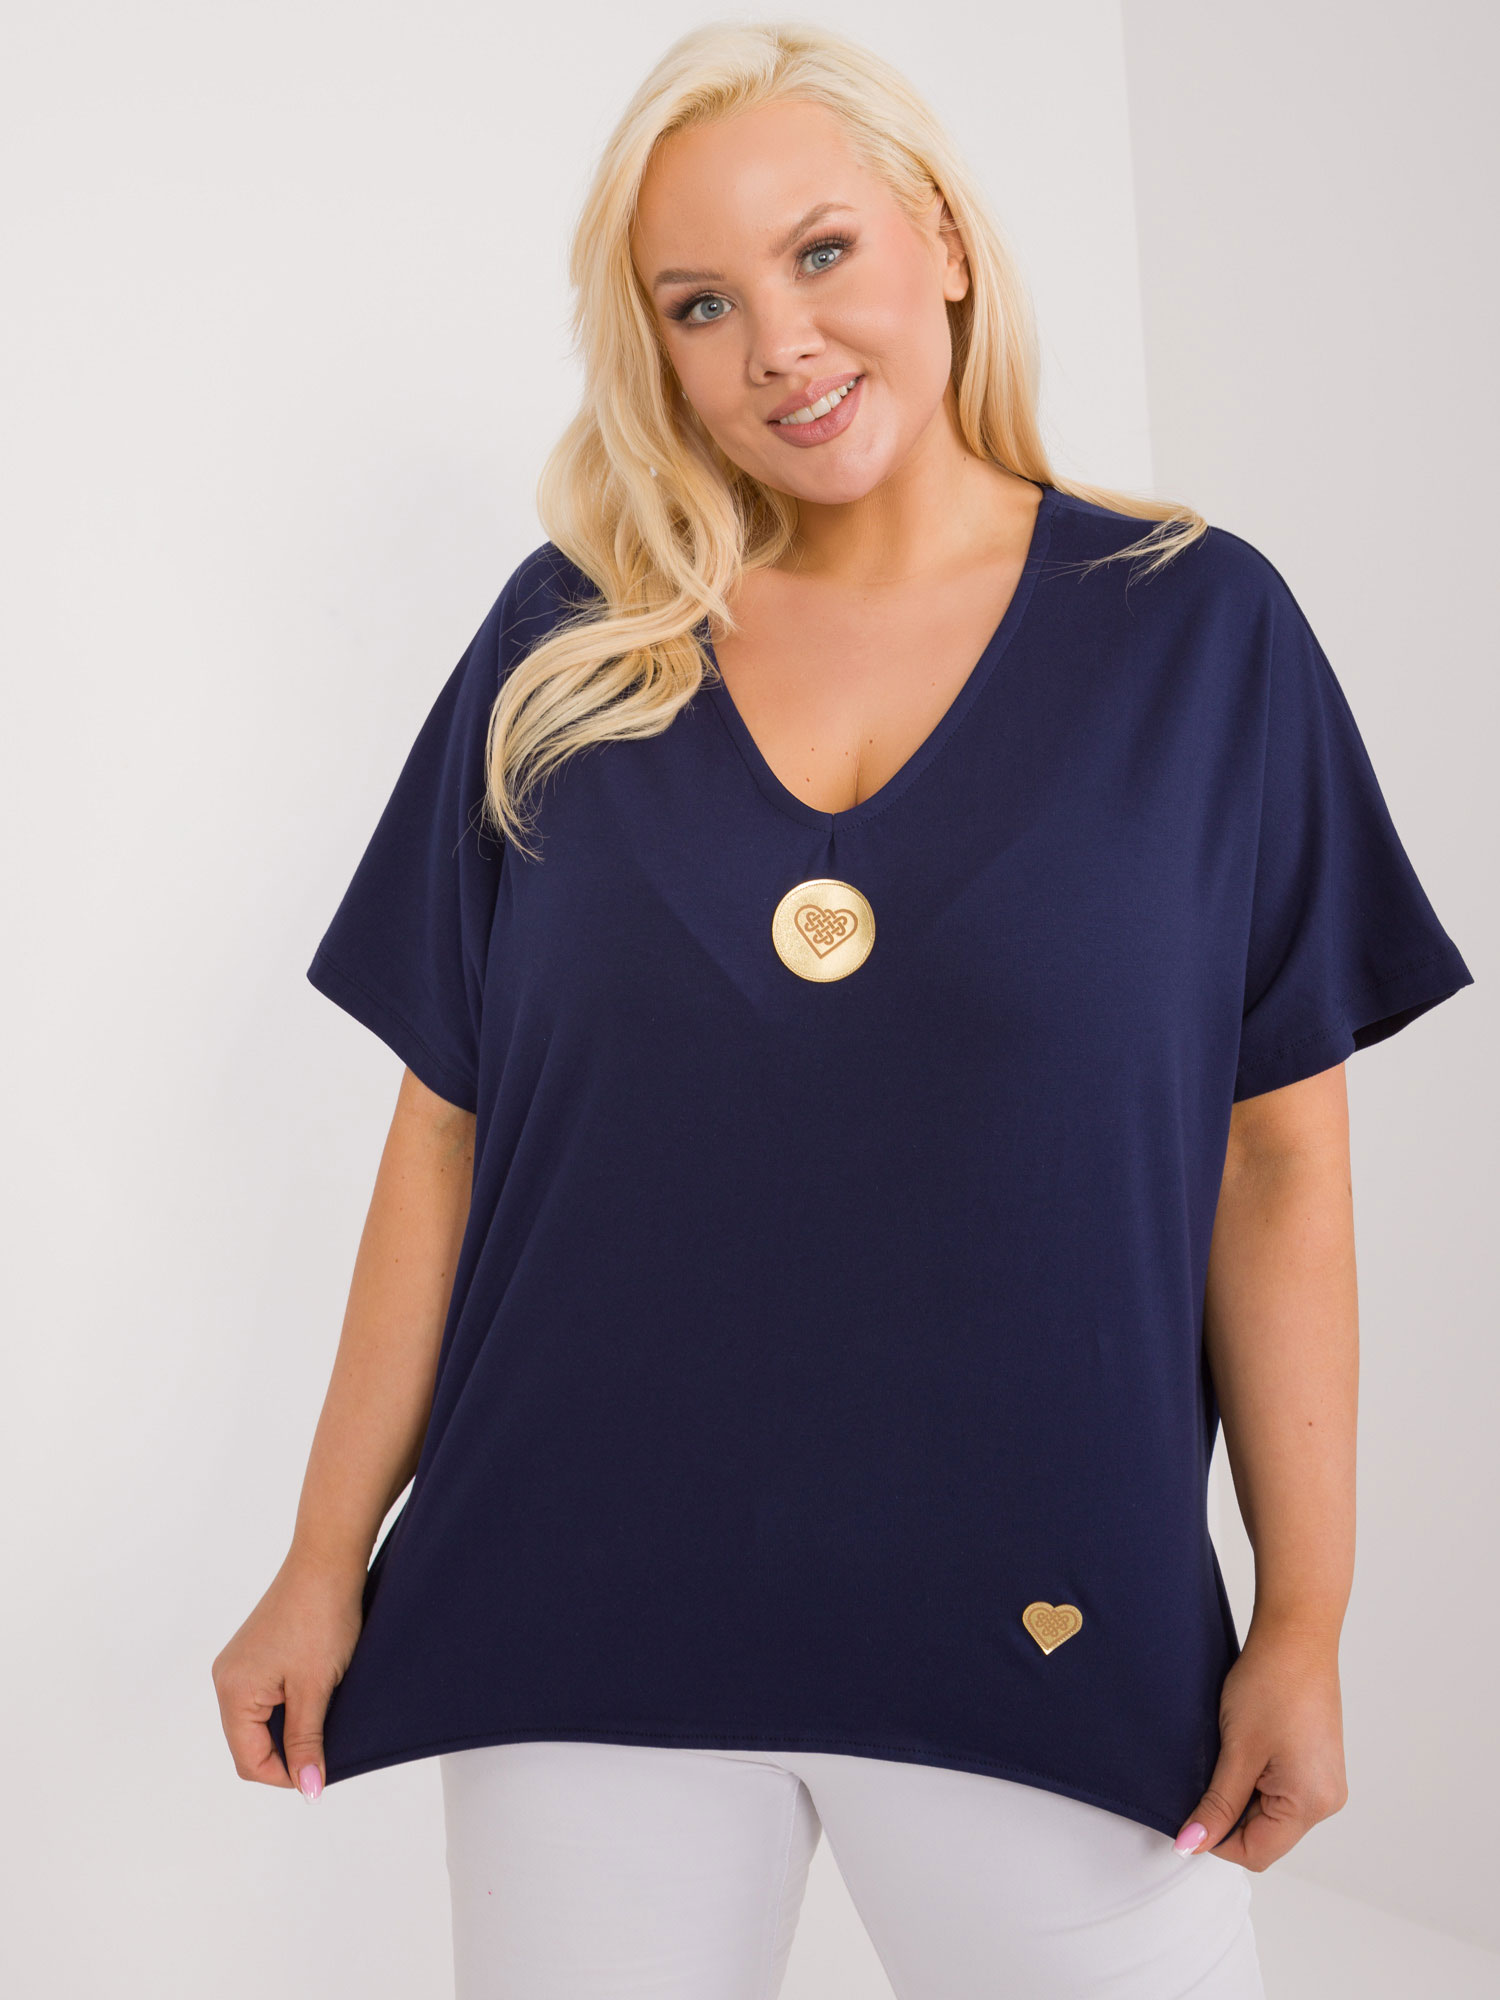 Navy blue asymmetrical blouse plus size